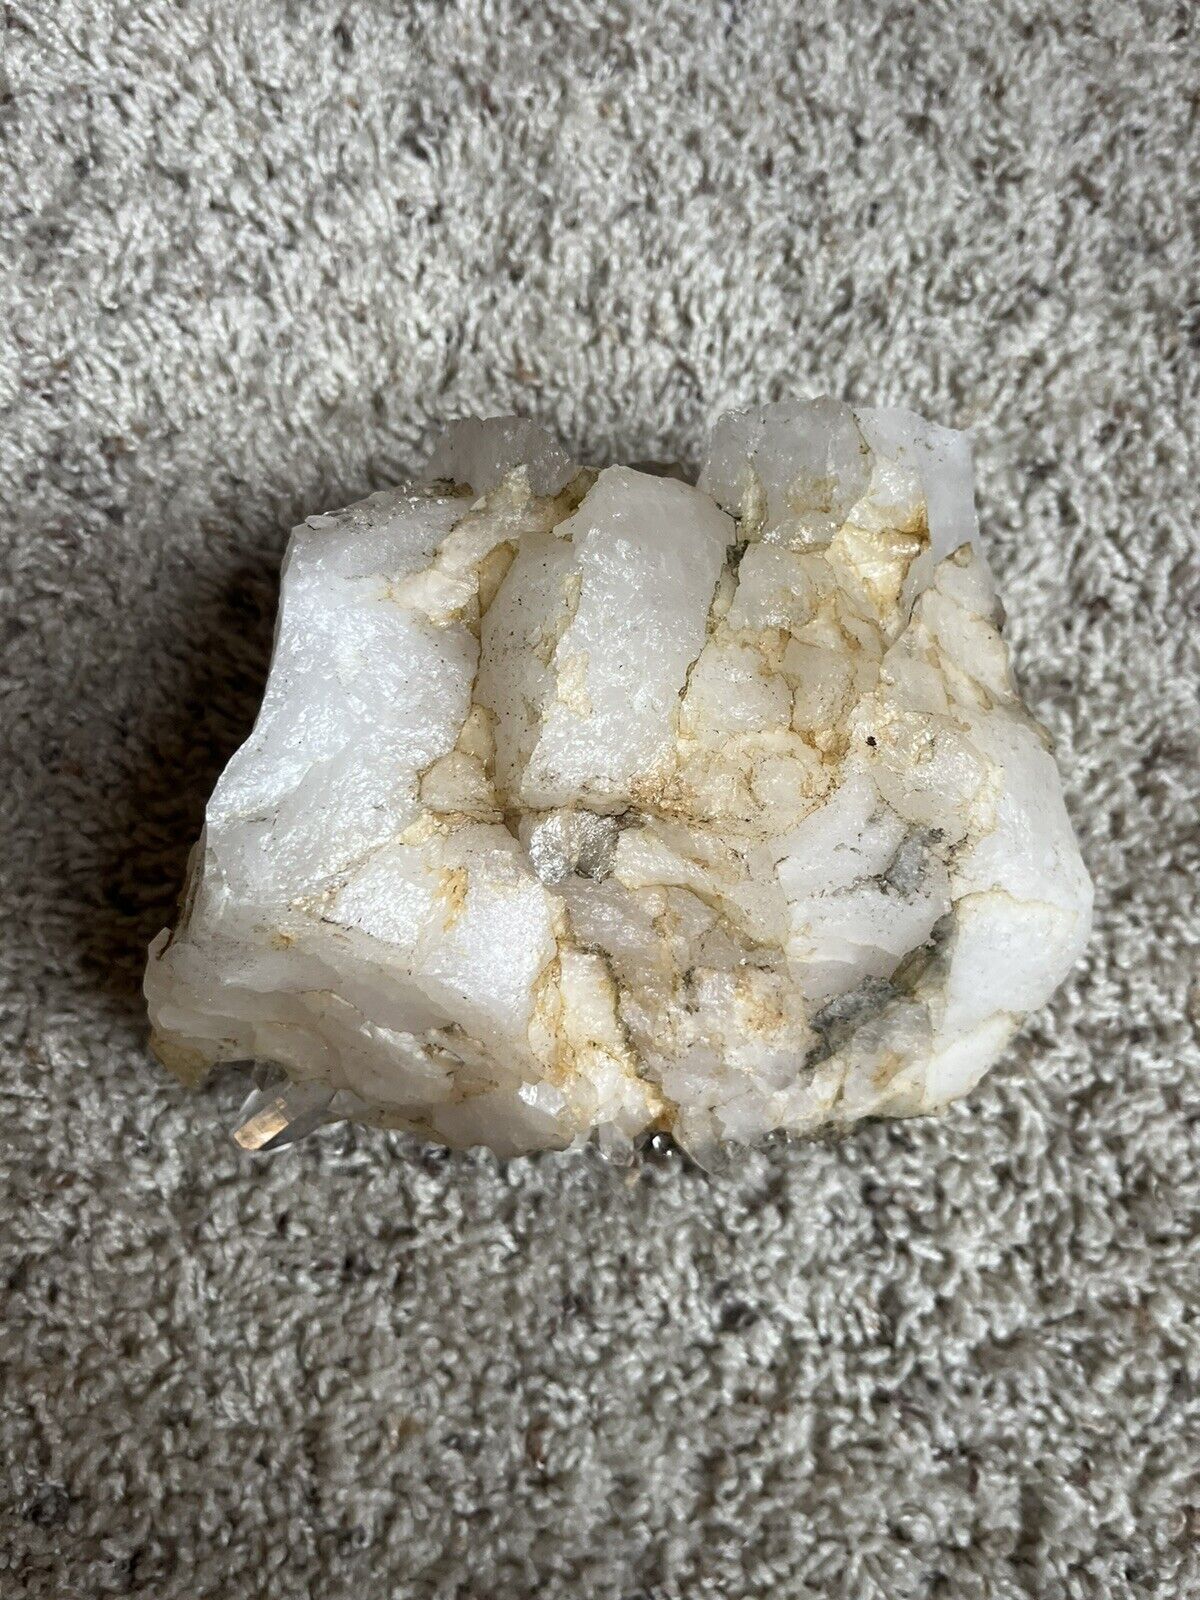 6LB Natural White Crystal Quartz Crystal Cluster Specimen